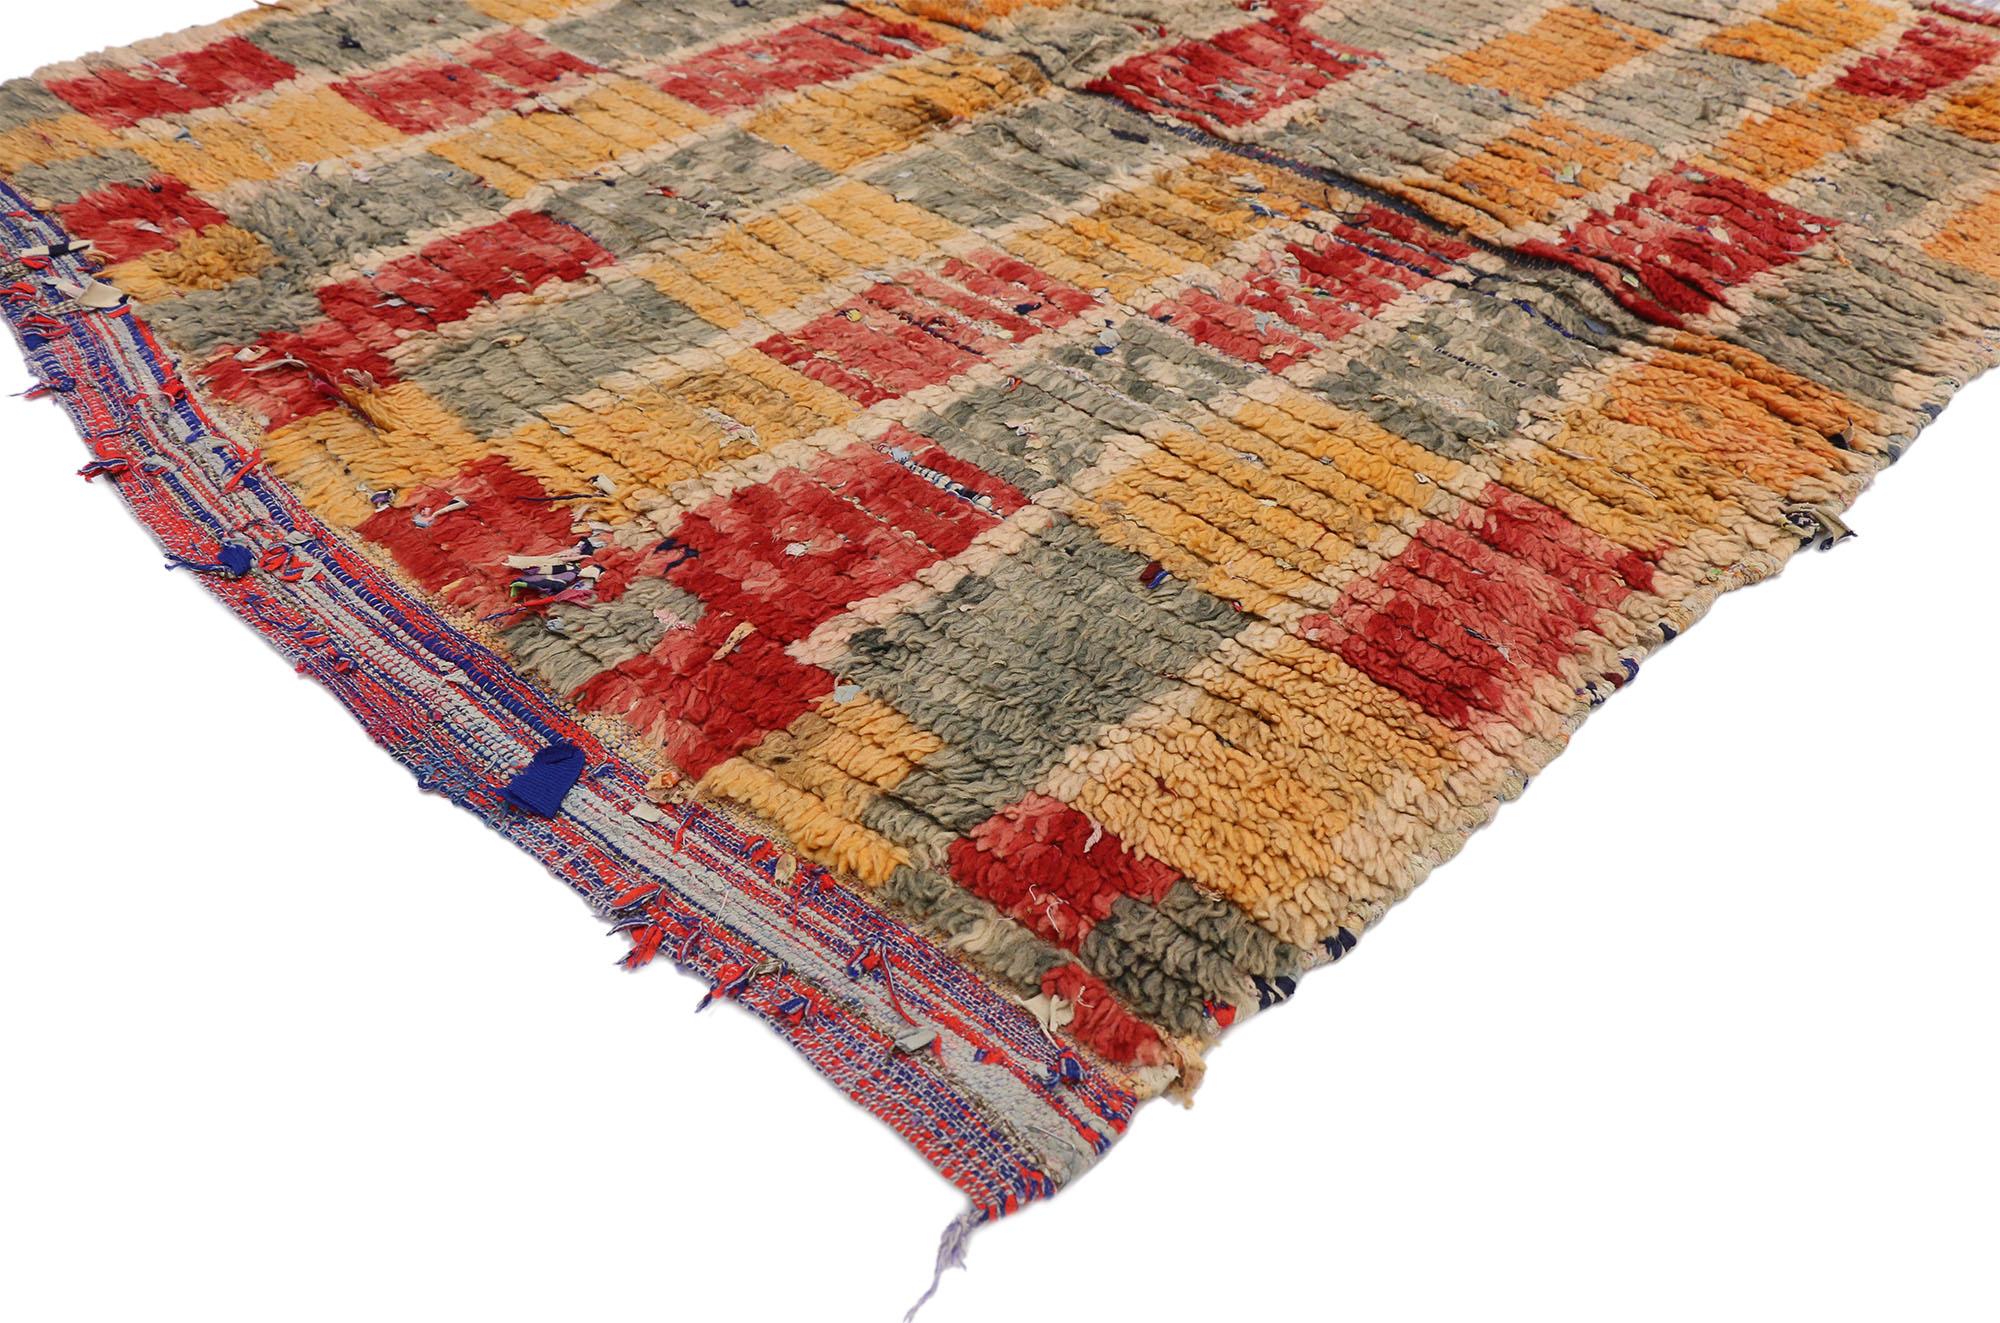 20884, tapis Boucherouite marocain vintage de style Bauhaus cubiste postmoderne. Ce tapis berbère marocain Boucherouite vintage en laine et coton noué à la main, de style cubiste, présente un motif en damier. Le motif géométrique est étagé avec un